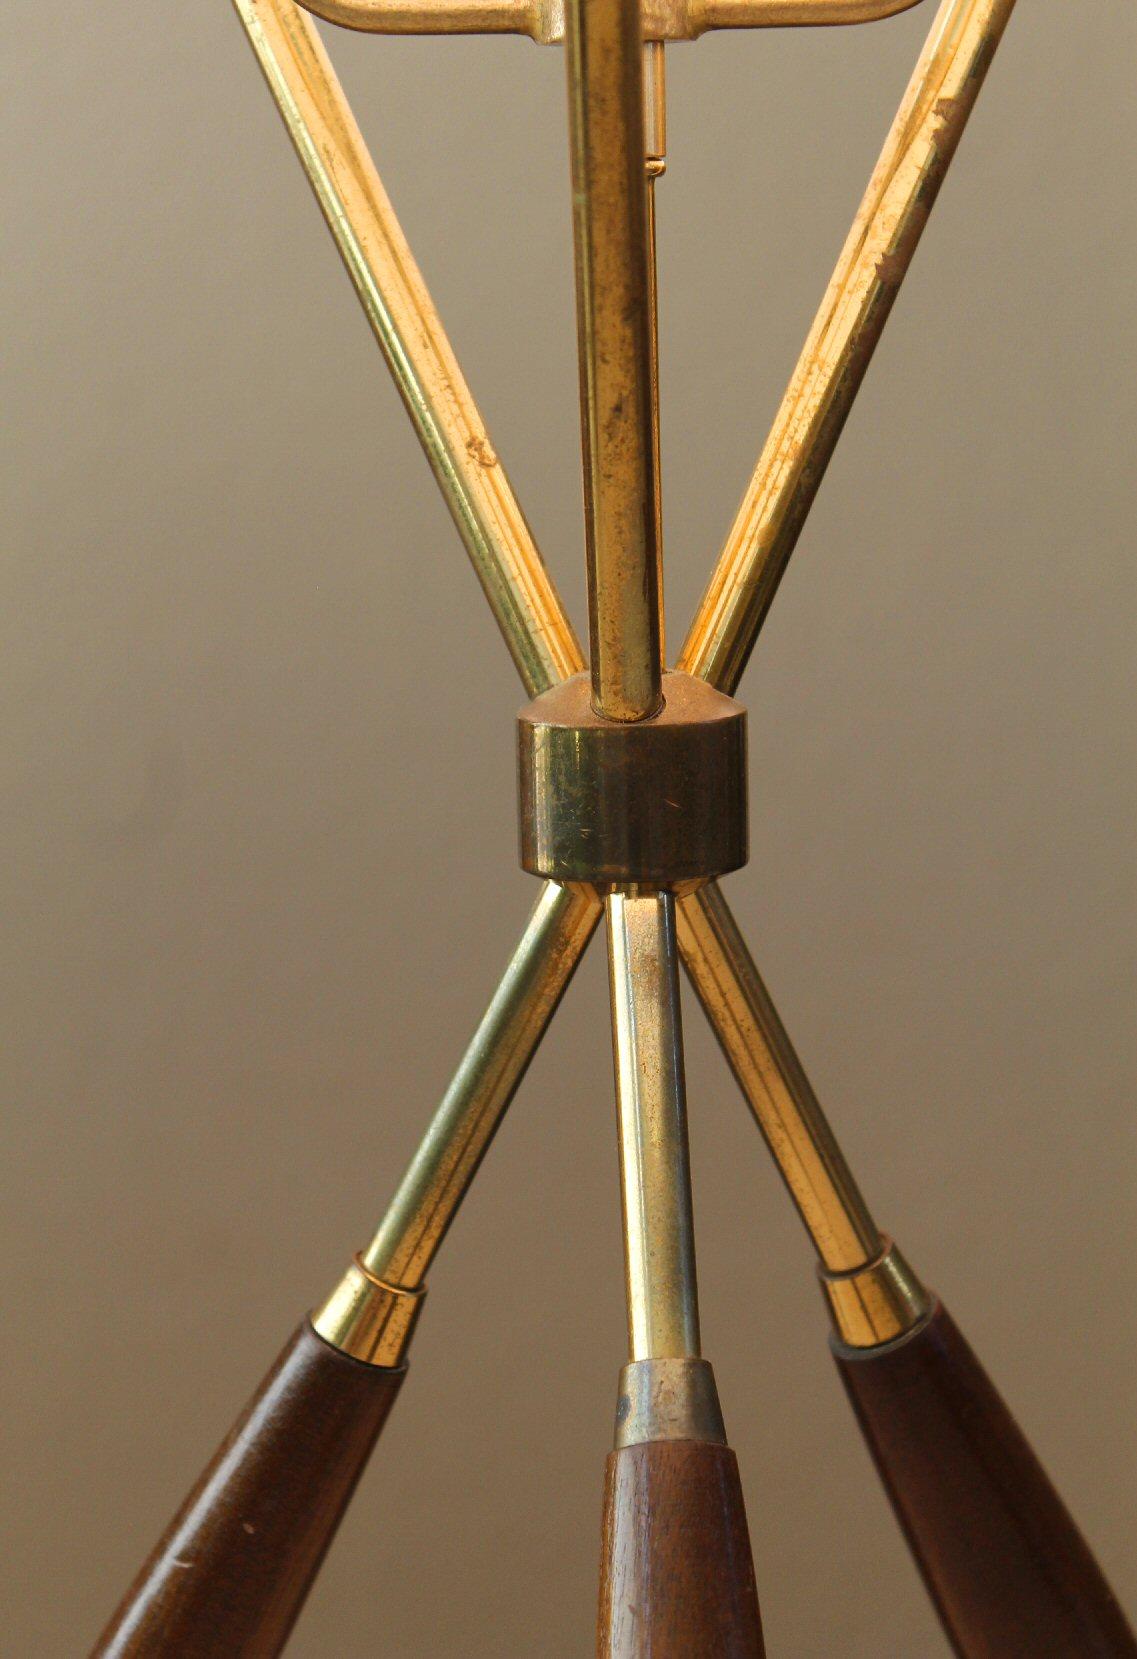 American Mid Century Modern Lightolier Tripod Table Lamp Gerald Thurston 1954 